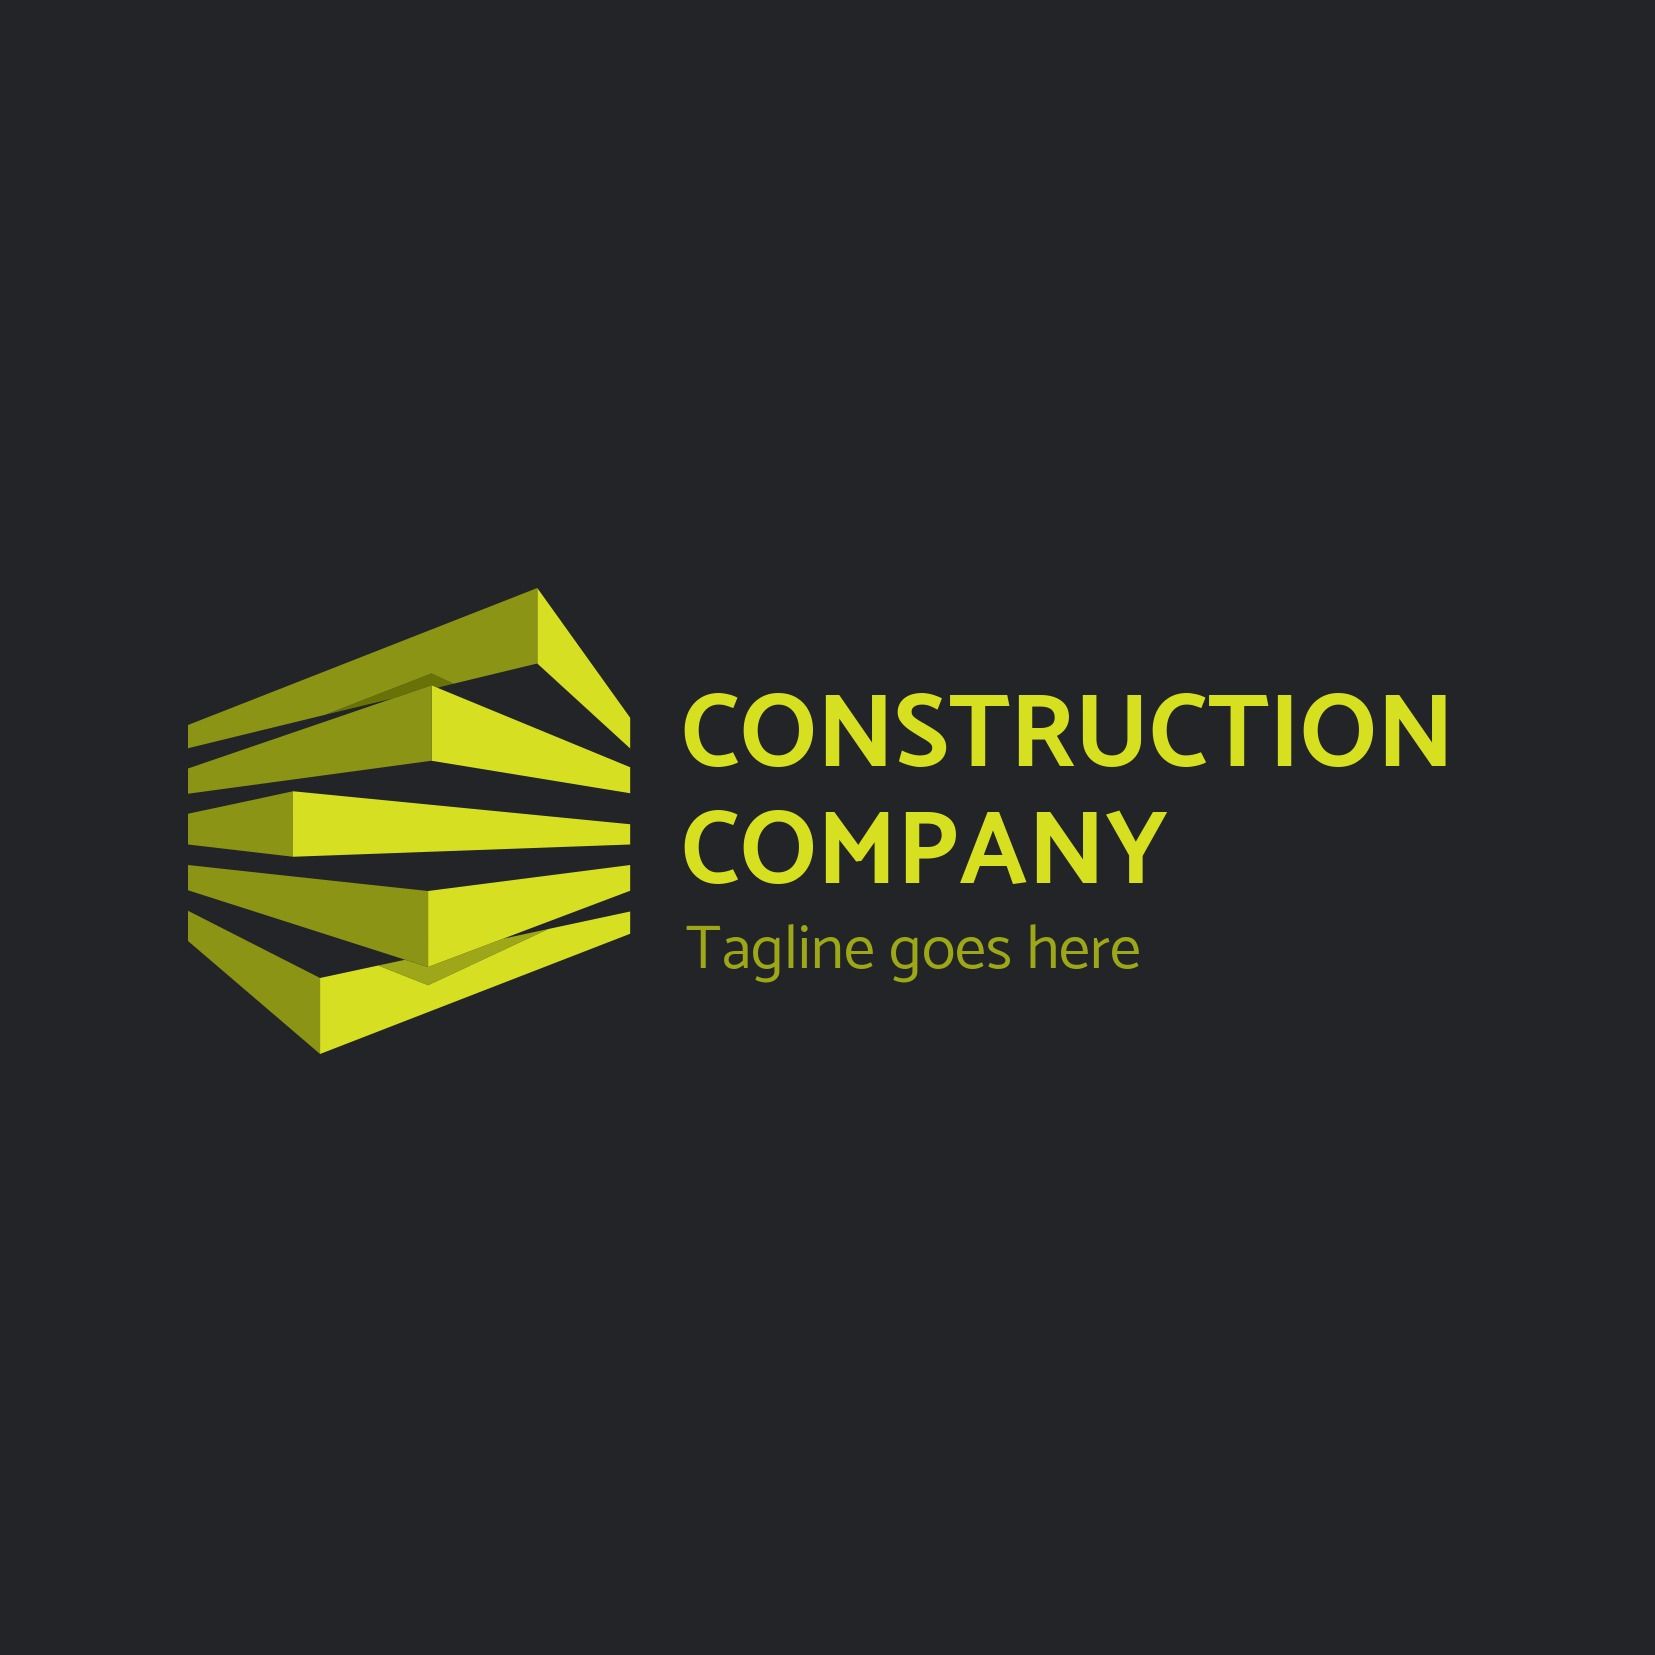 Logo d&#39;entreprise de construction cubique avec texte vert vif sur fond sombre - La polyvalence de la police Catamaran - Image